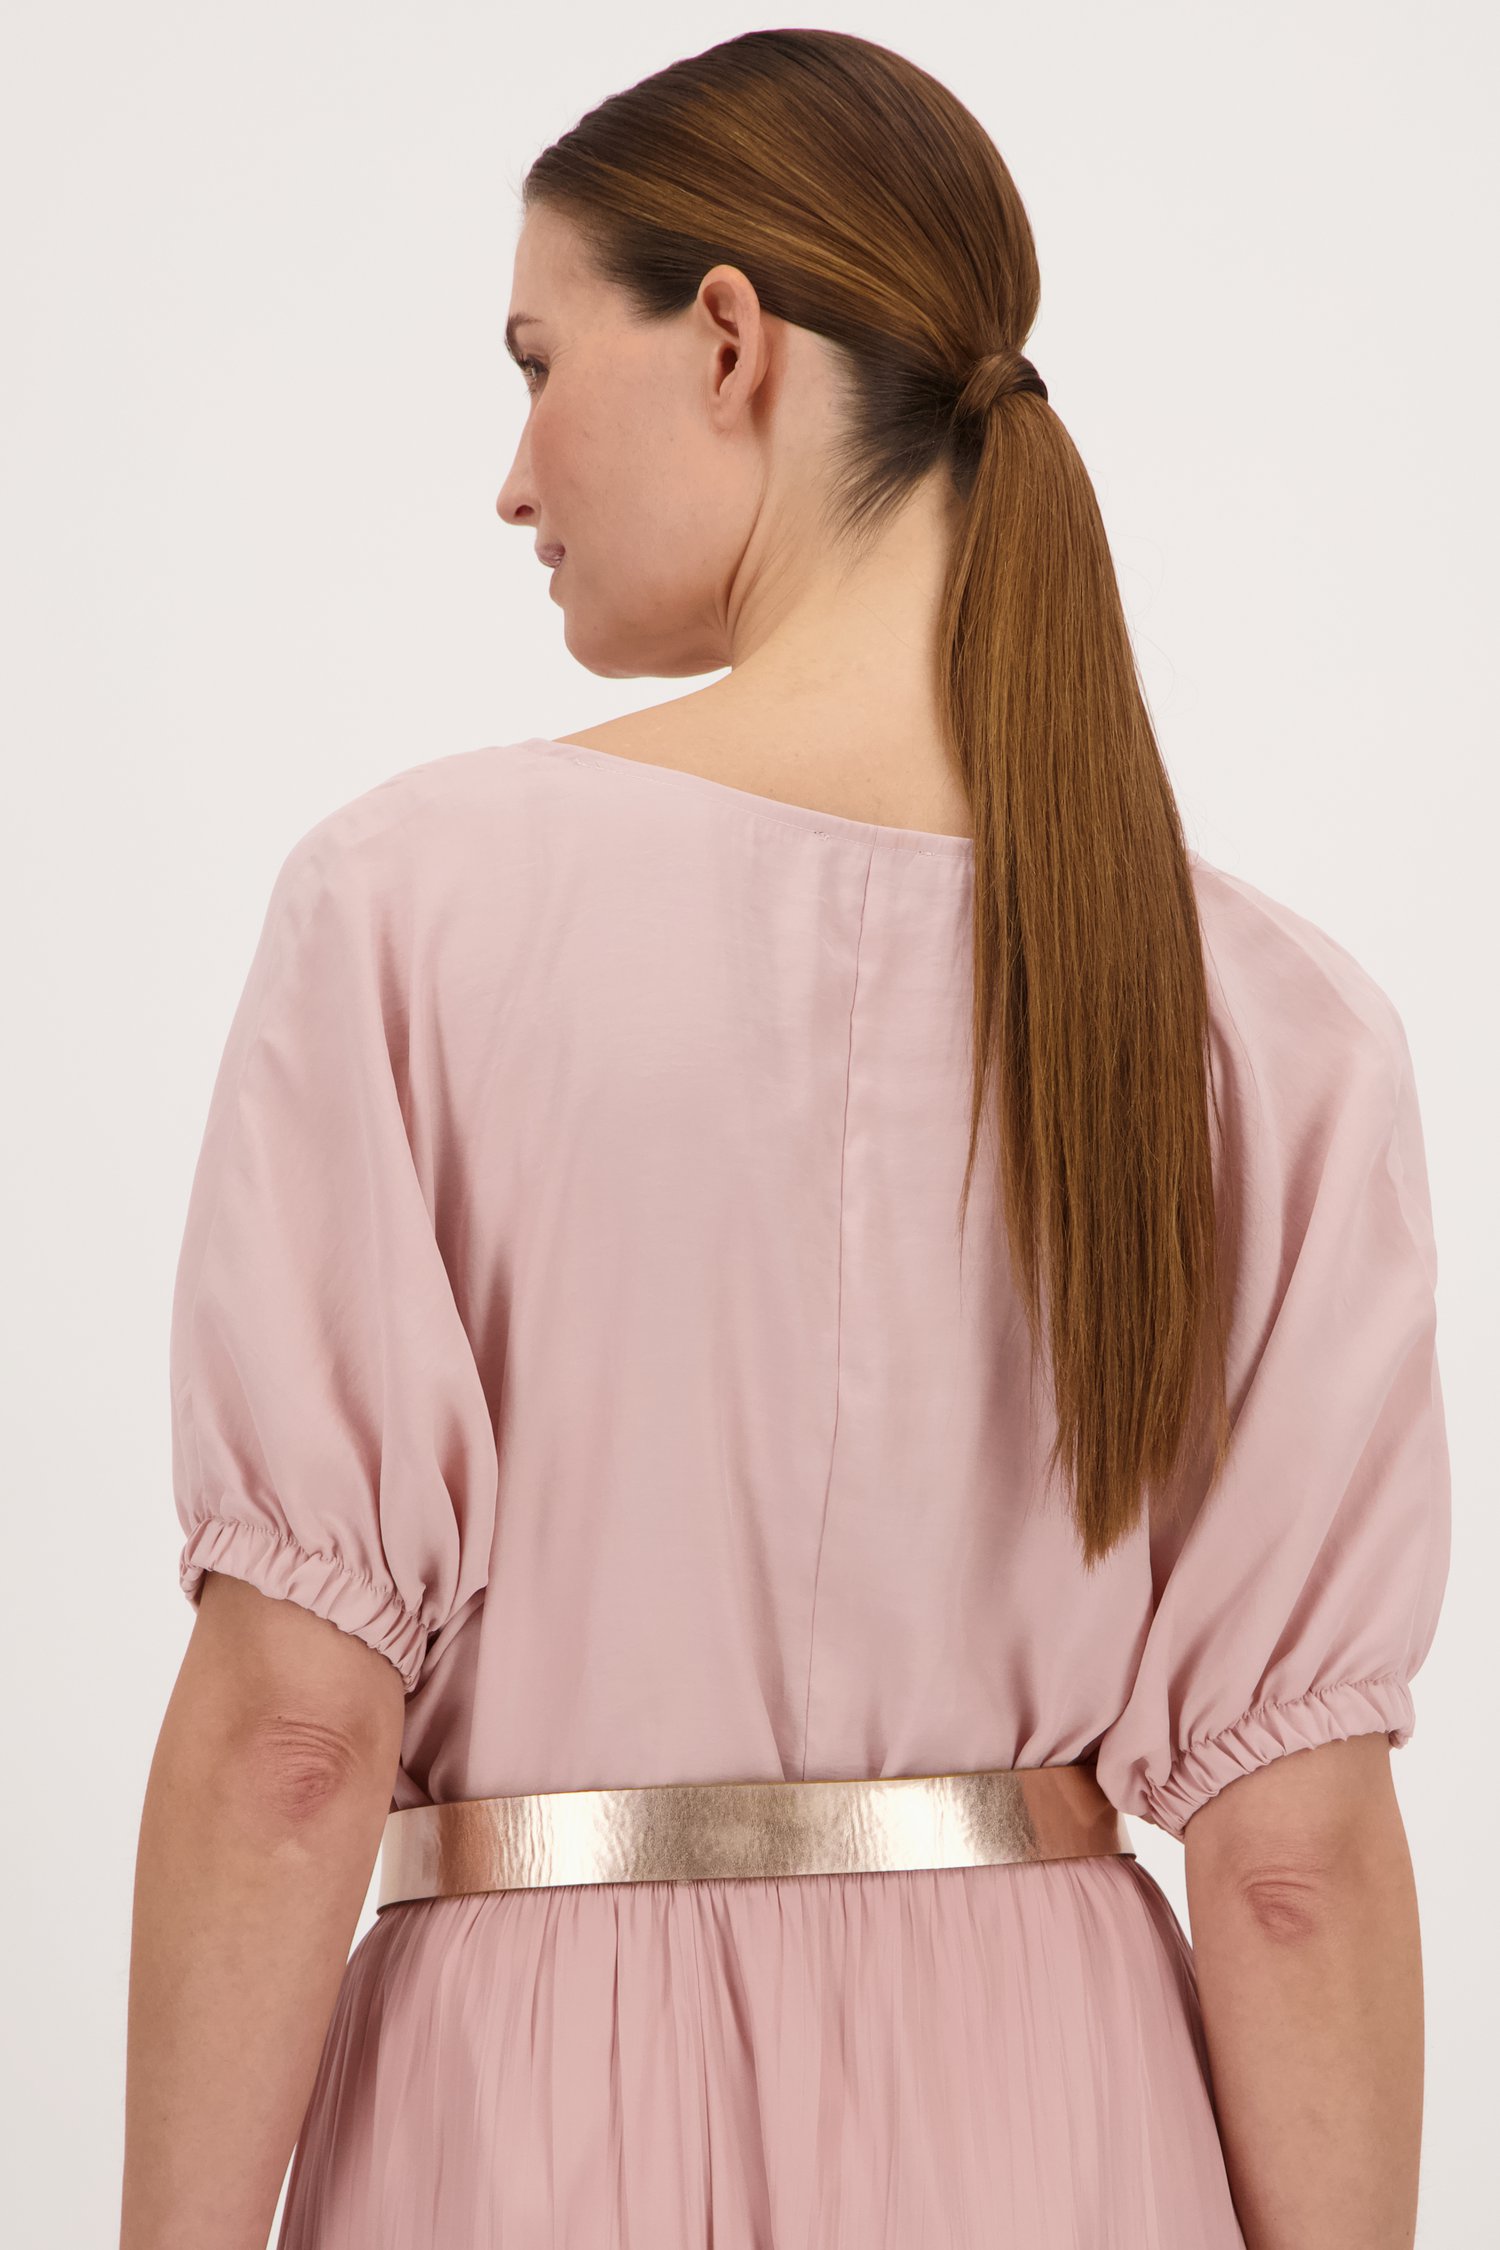 Poederroze blouse van More & More voor Dames